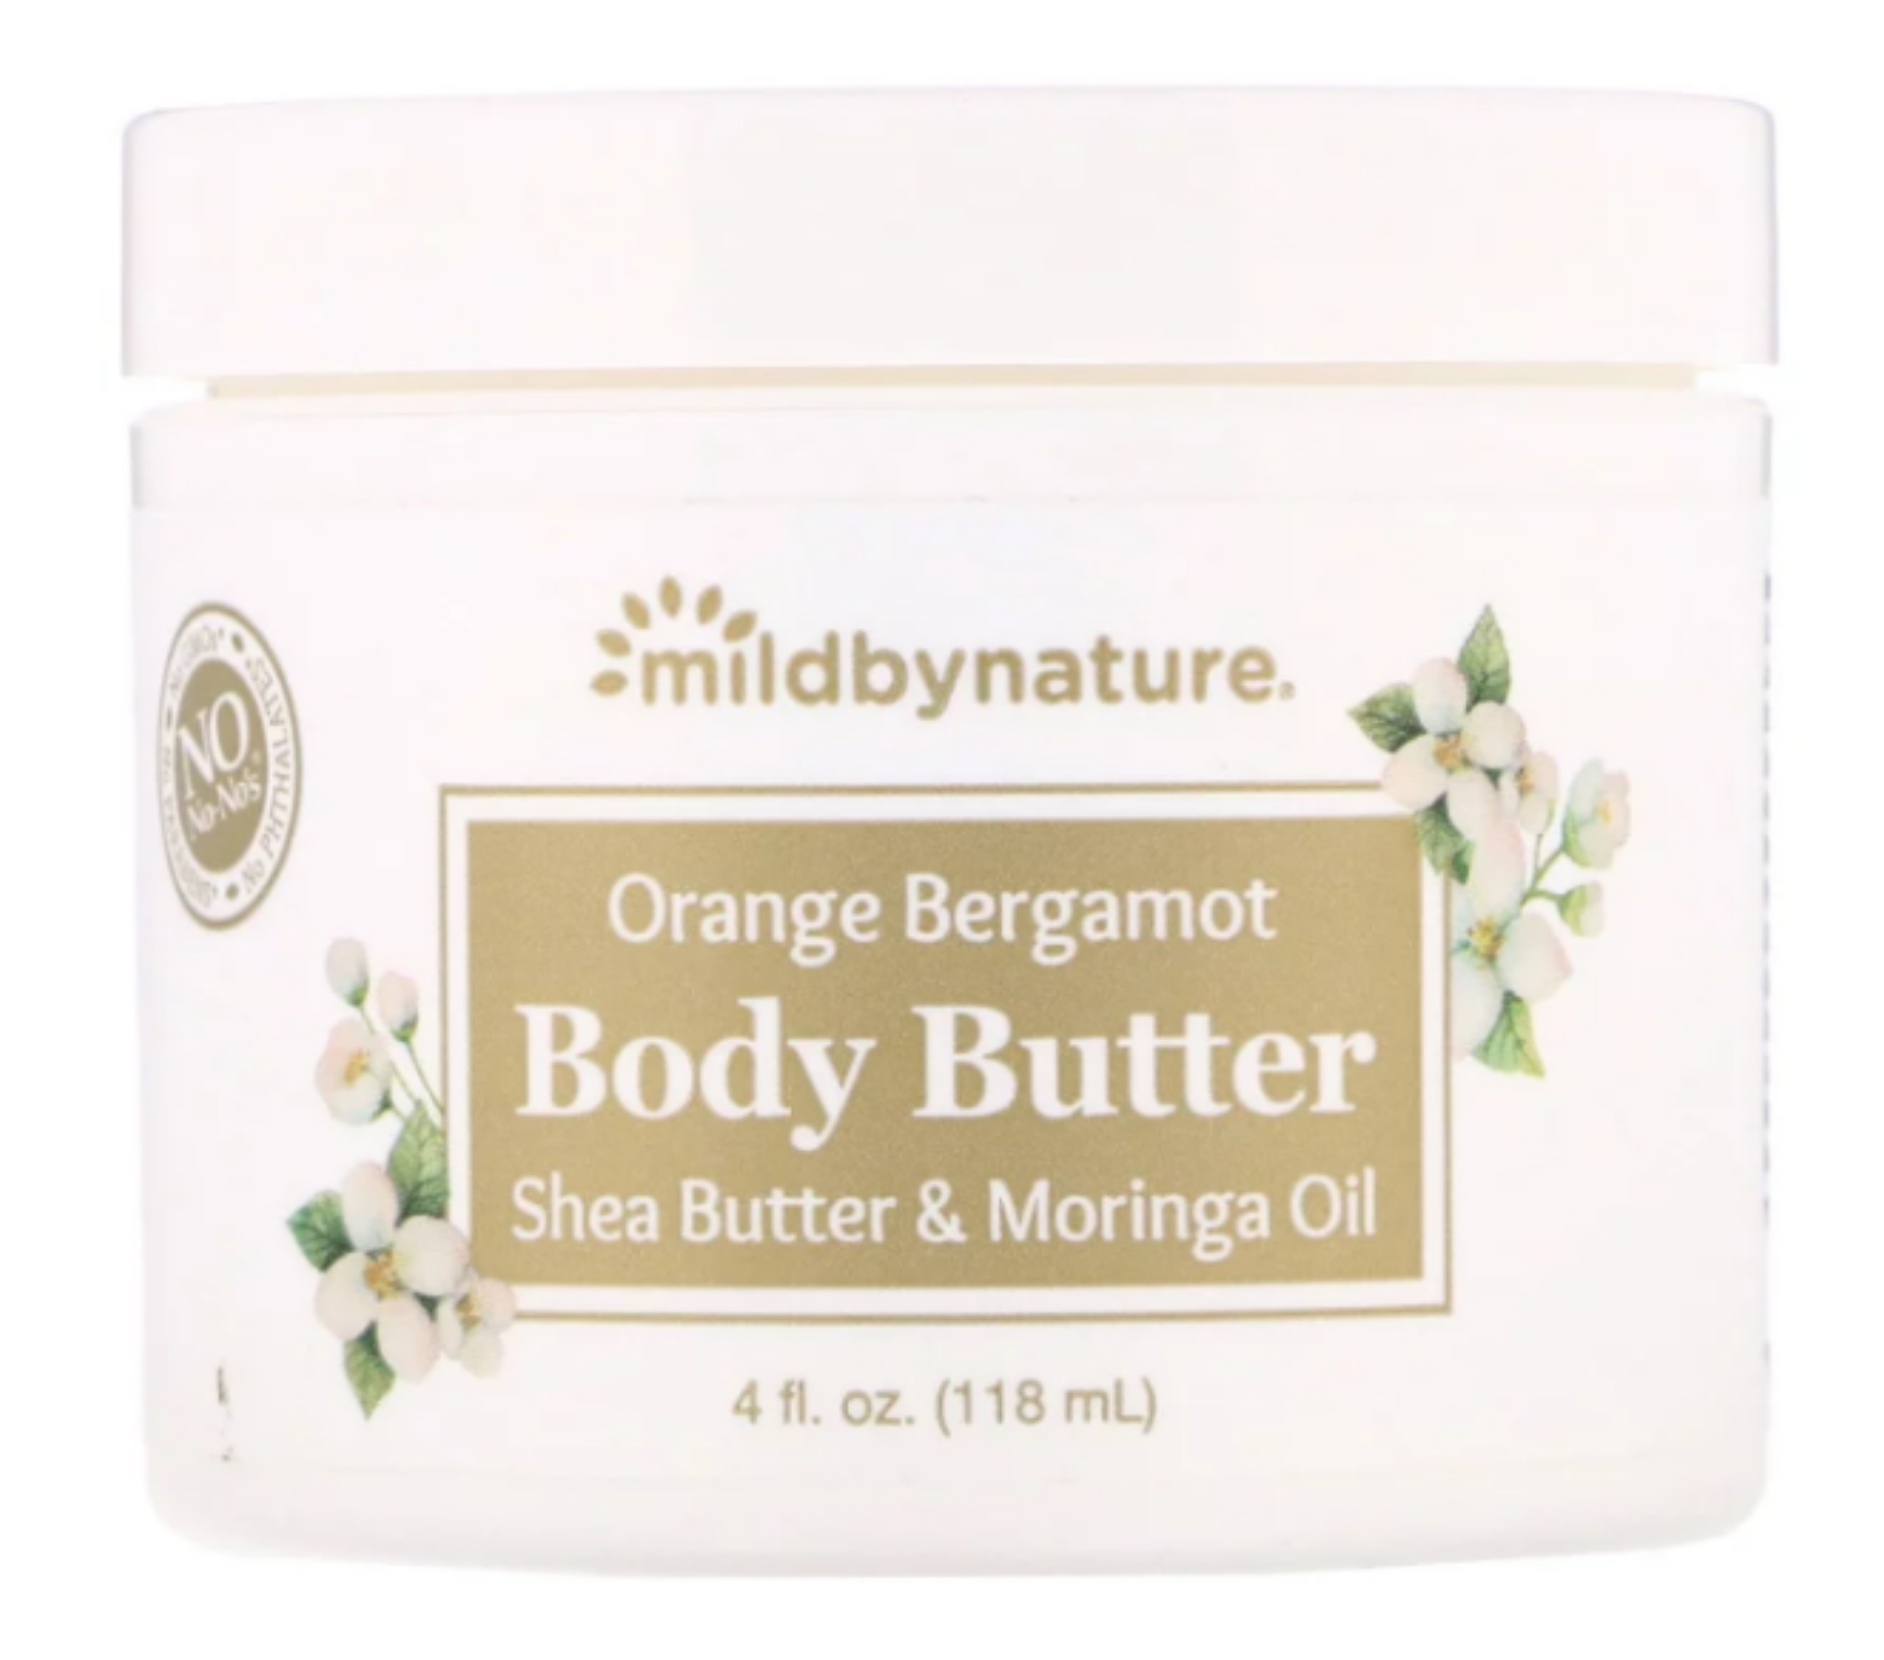 Mild By Nature Orange Bergamot Body Butter With Shea Butter & Moringa Oil